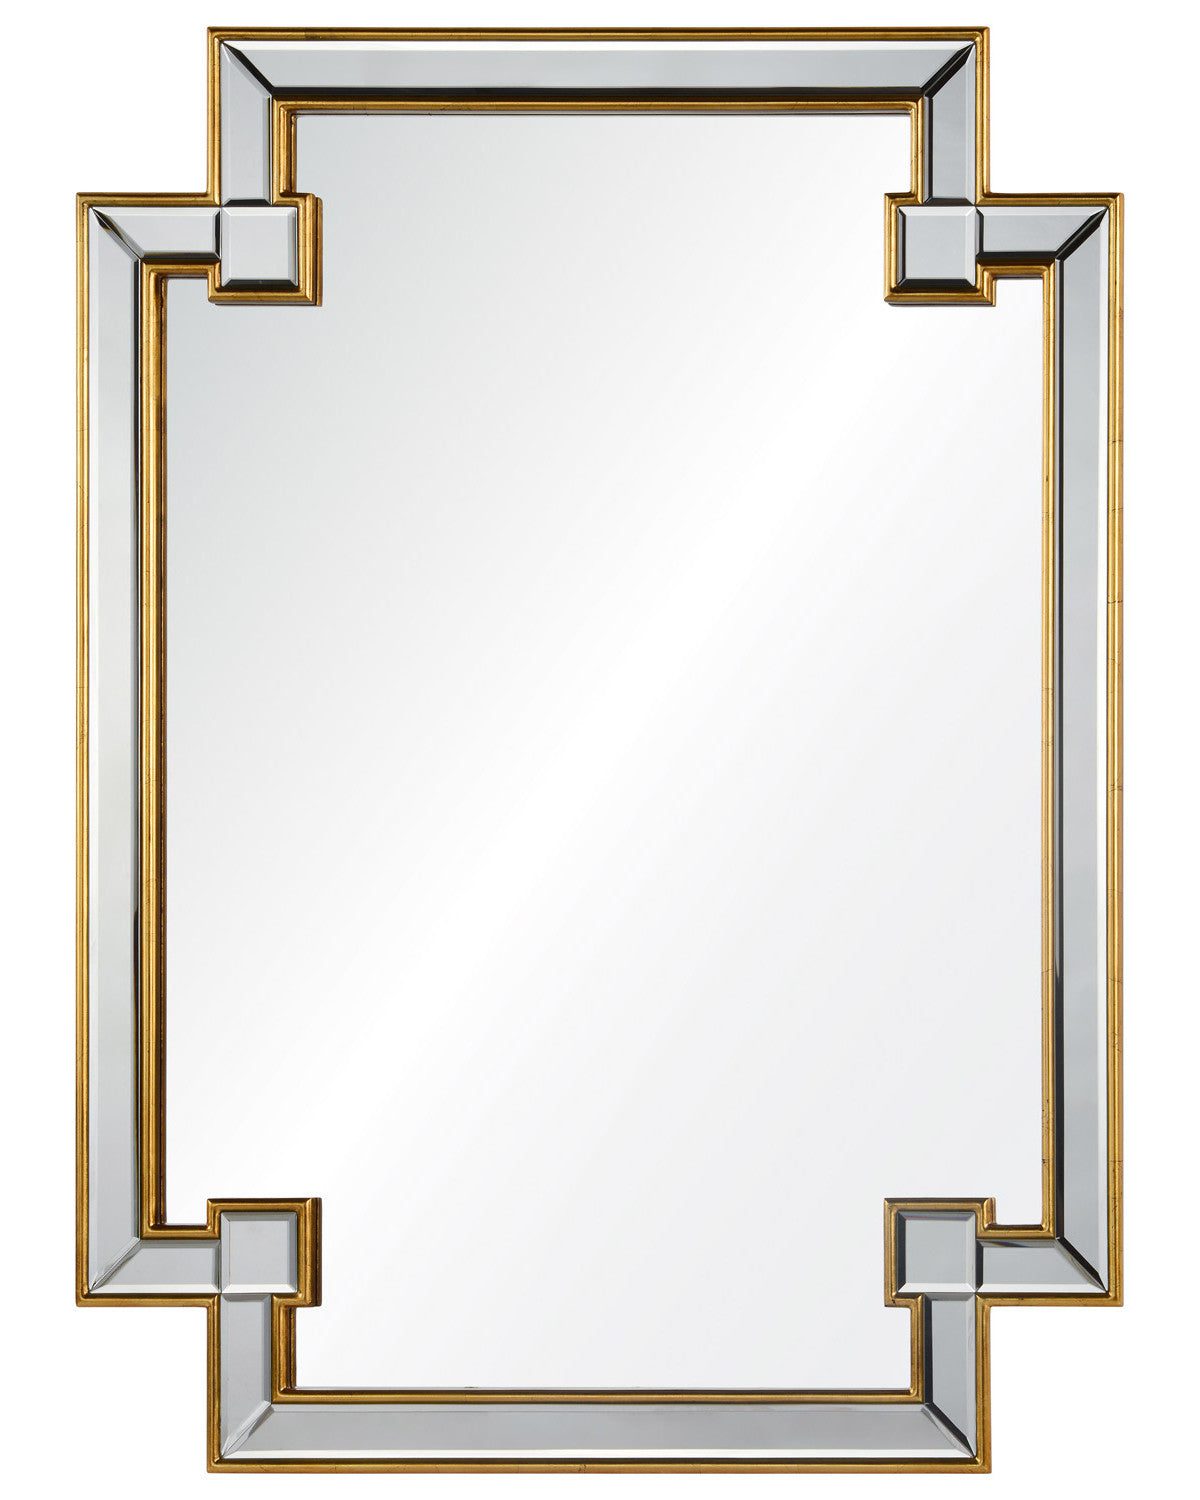 Прямоугольное зеркало в золотой раме "Честер" (вид спереди, на белом фоне)